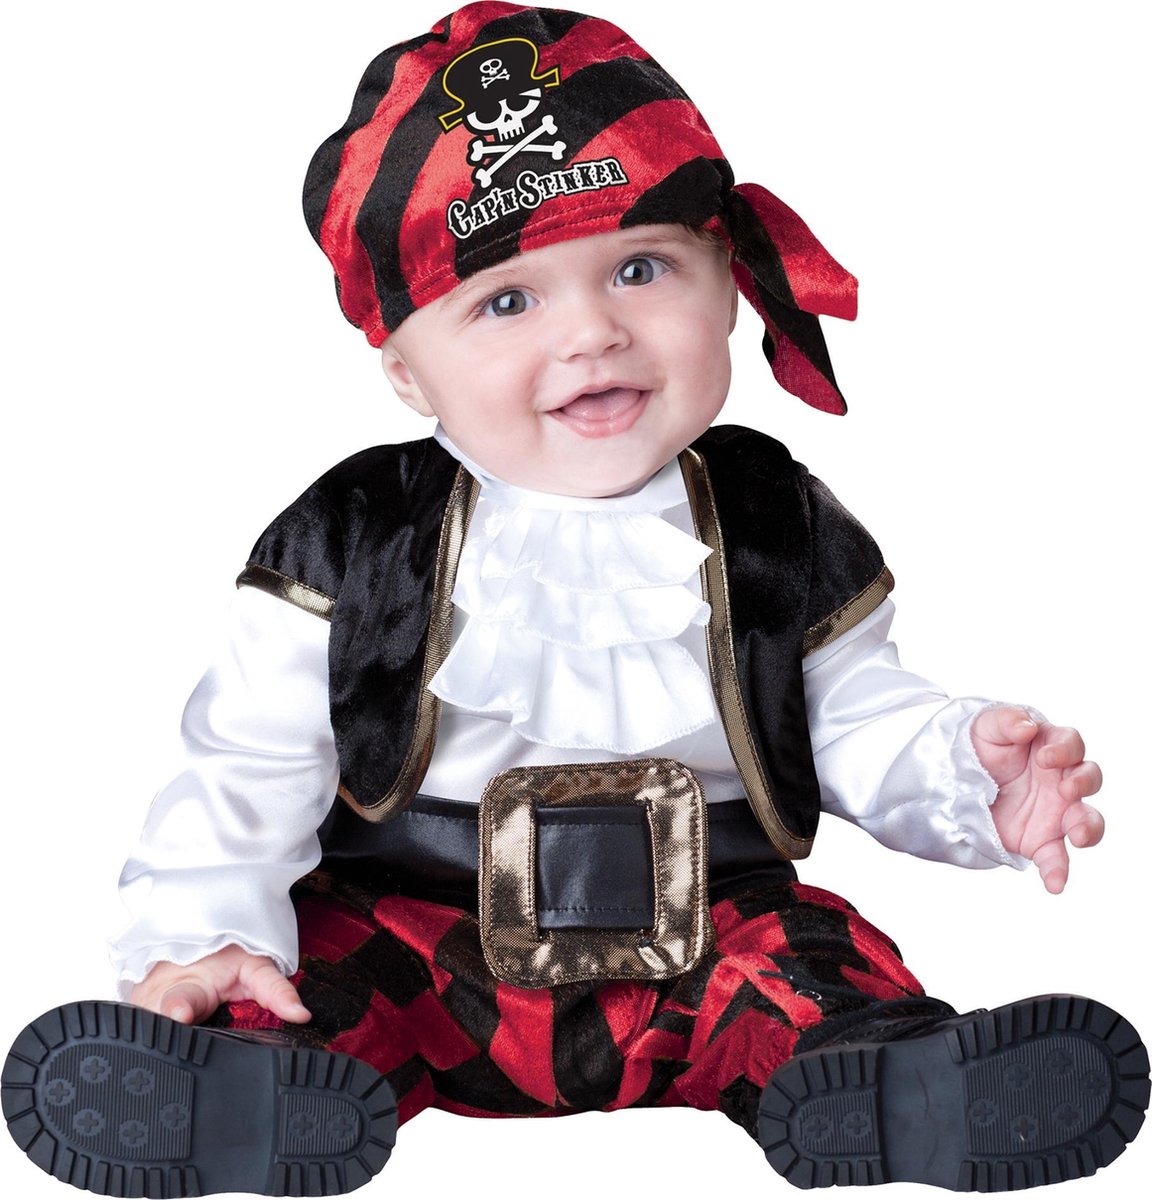 BOLO PARTY - Piraten kostuum voor baby's - Klassiek - 74/80 (12-18 maanden)